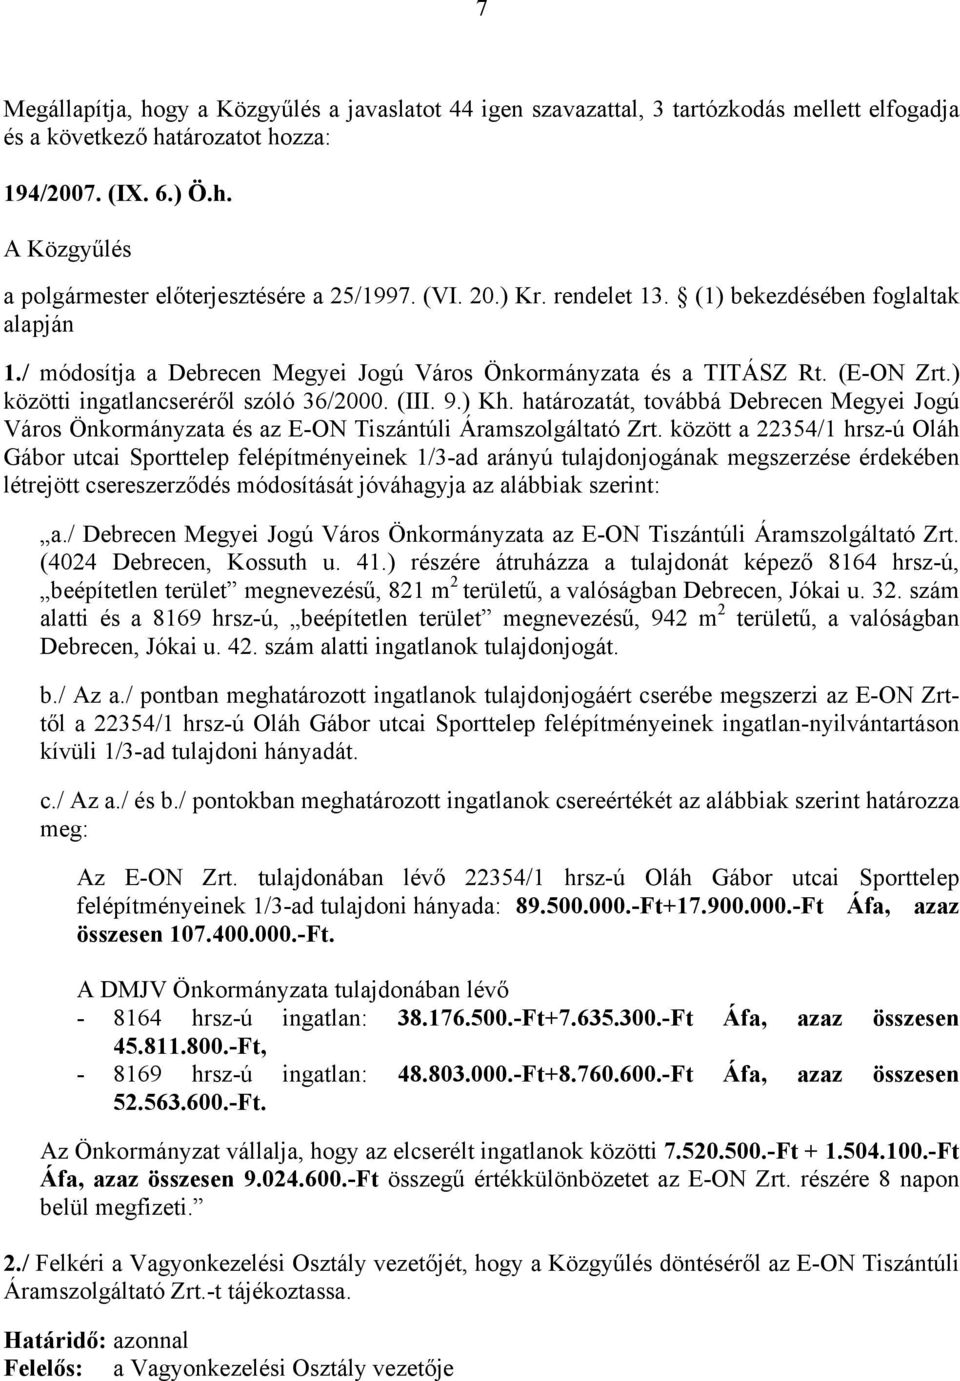 határozatát, továbbá Debrecen Megyei Jogú Város Önkormányzata és az E-ON Tiszántúli Áramszolgáltató Zrt.